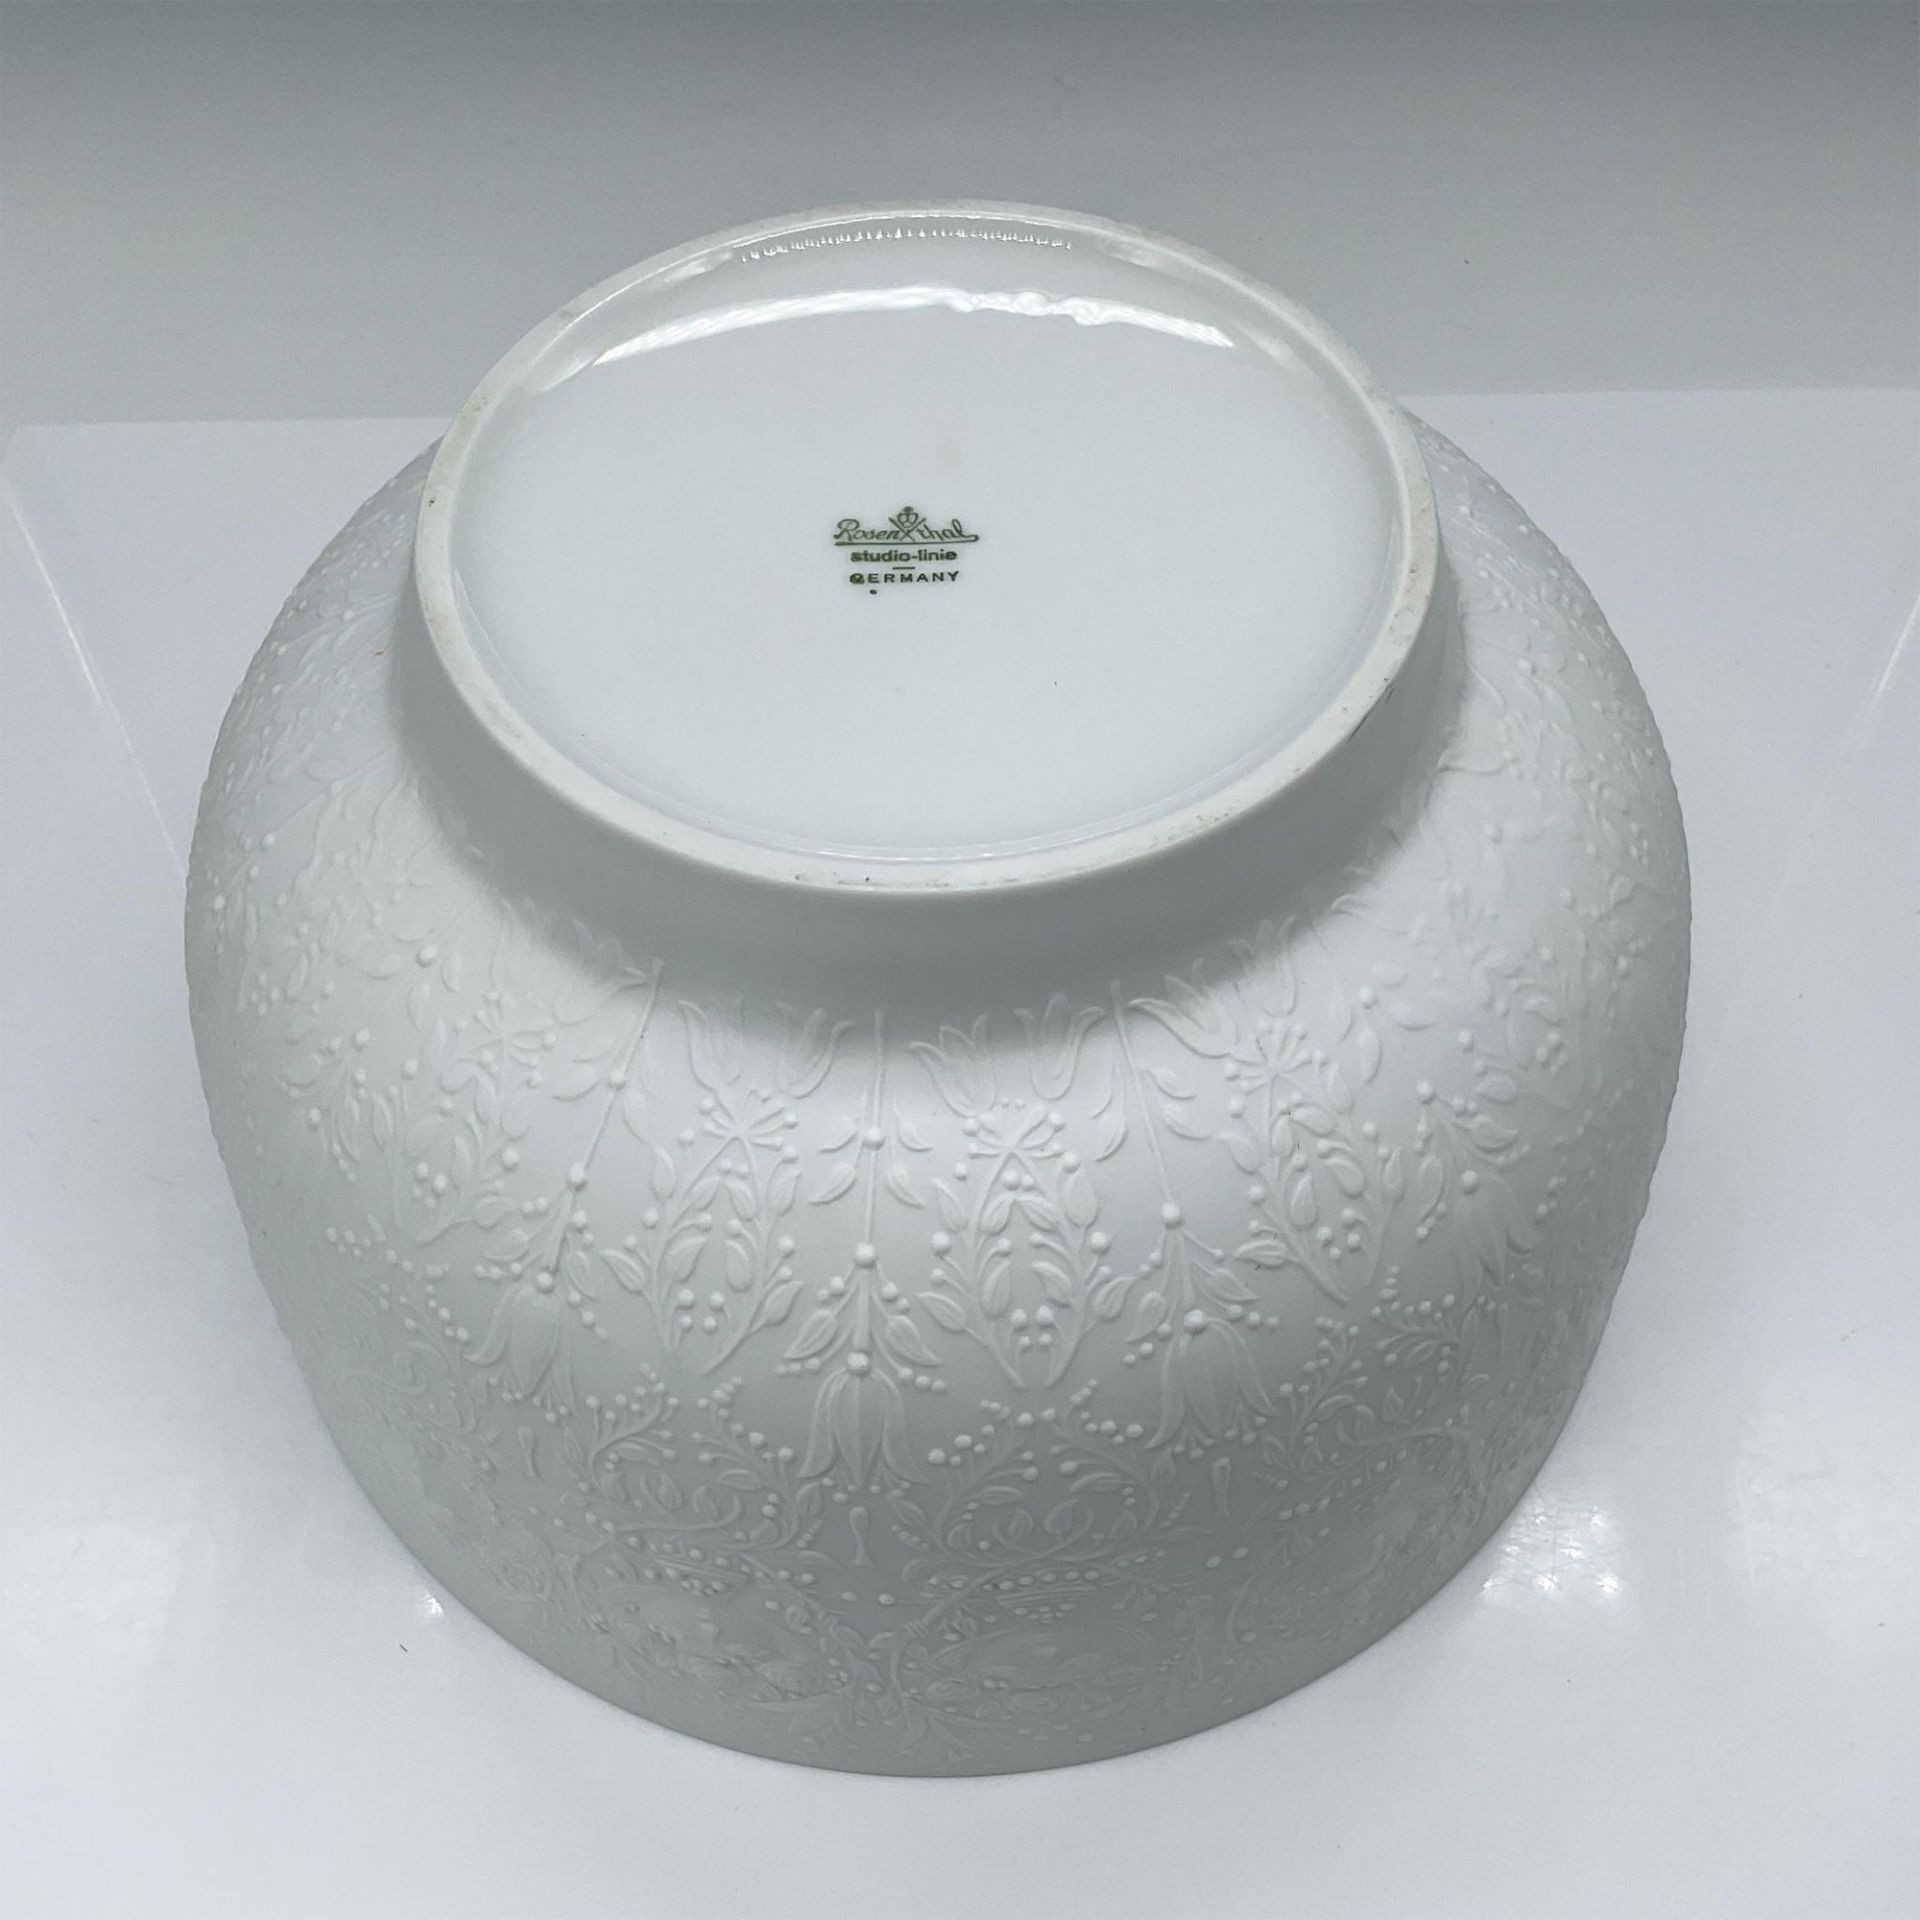 Rosenthal Porcelain Bjorn Wiinblad Bowl - Image 3 of 4